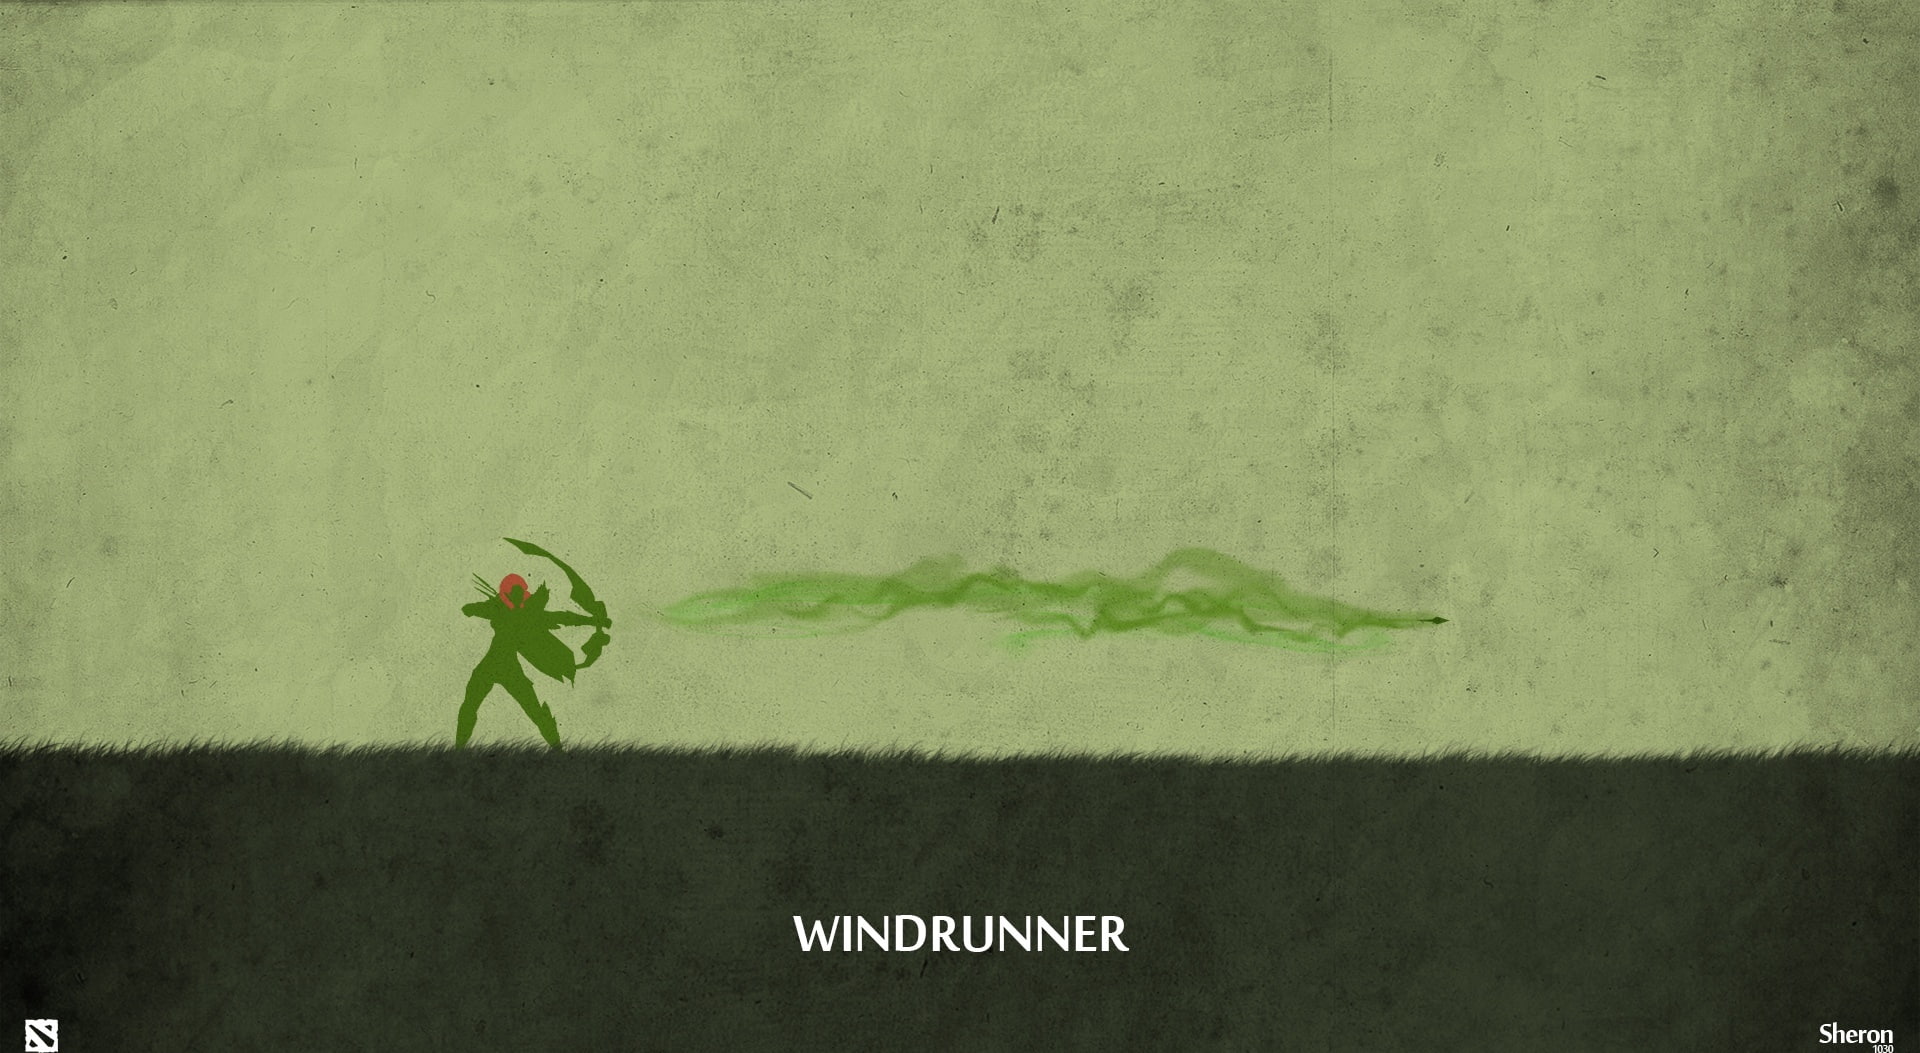 Windrunner - DotA 2, Dota 2 Wind Ranger wallpaper, Games, video game